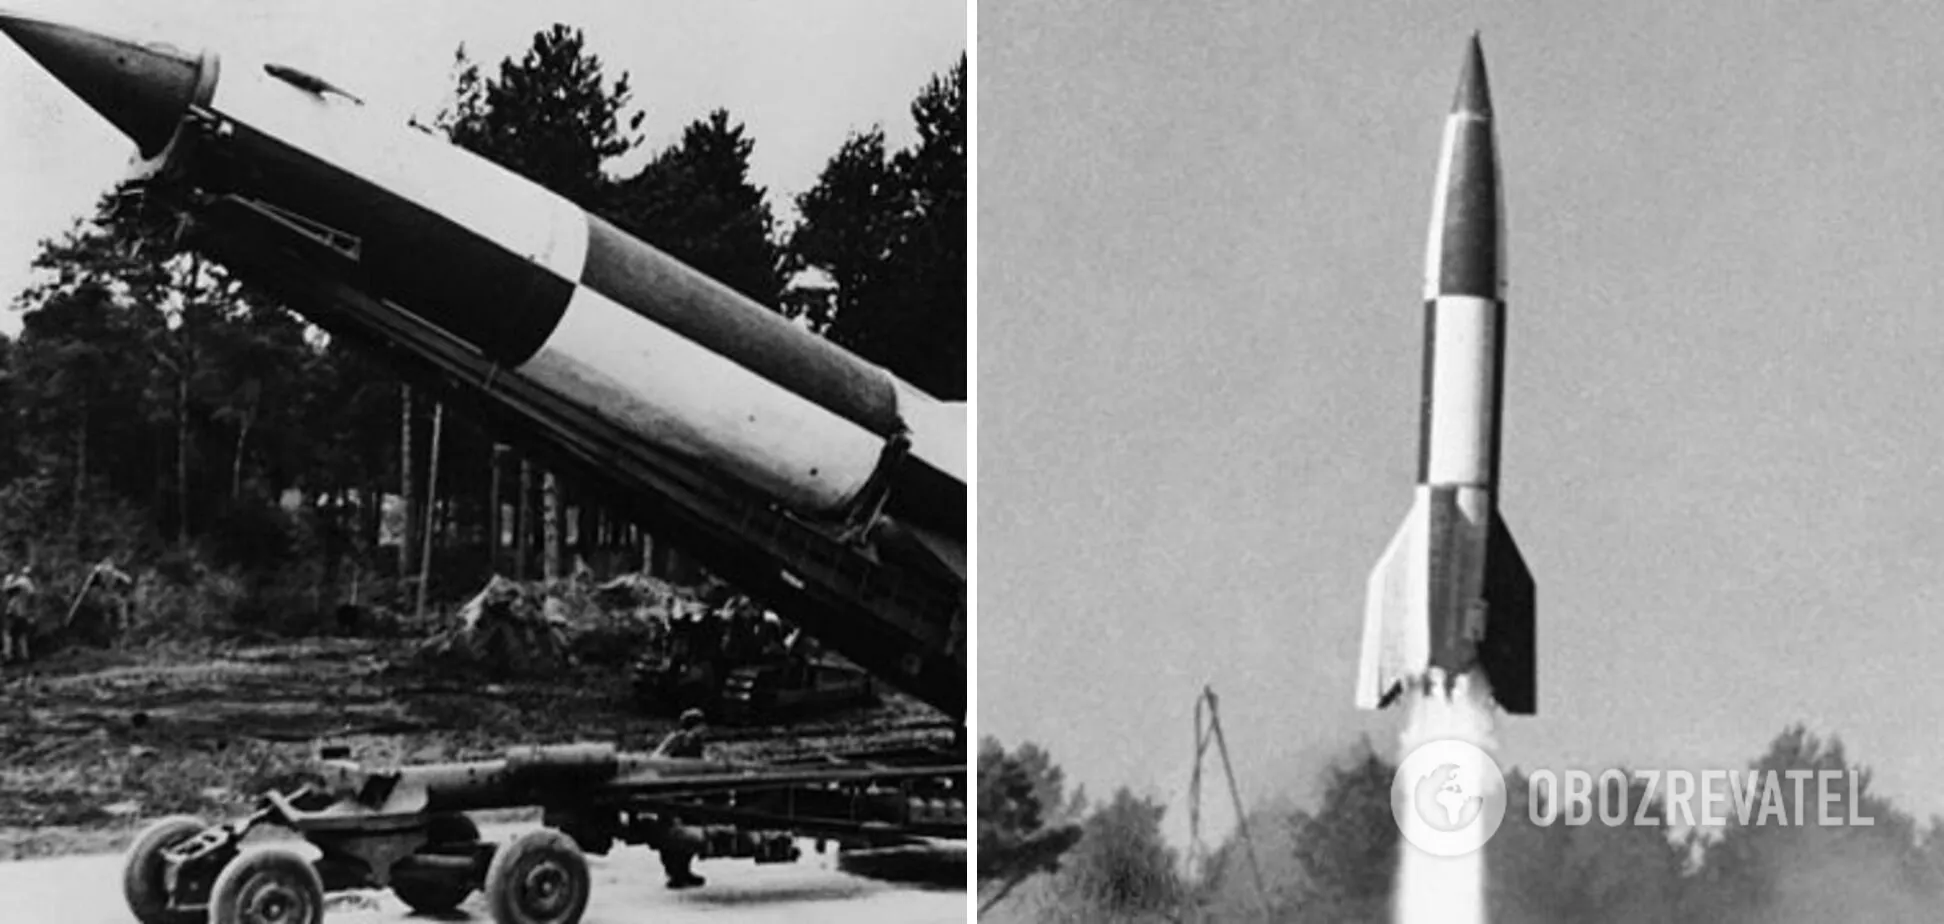 Слева – немецкая ракета Фау-2 в 1944 году, справа – советская ракета Р1 в 1948 году.